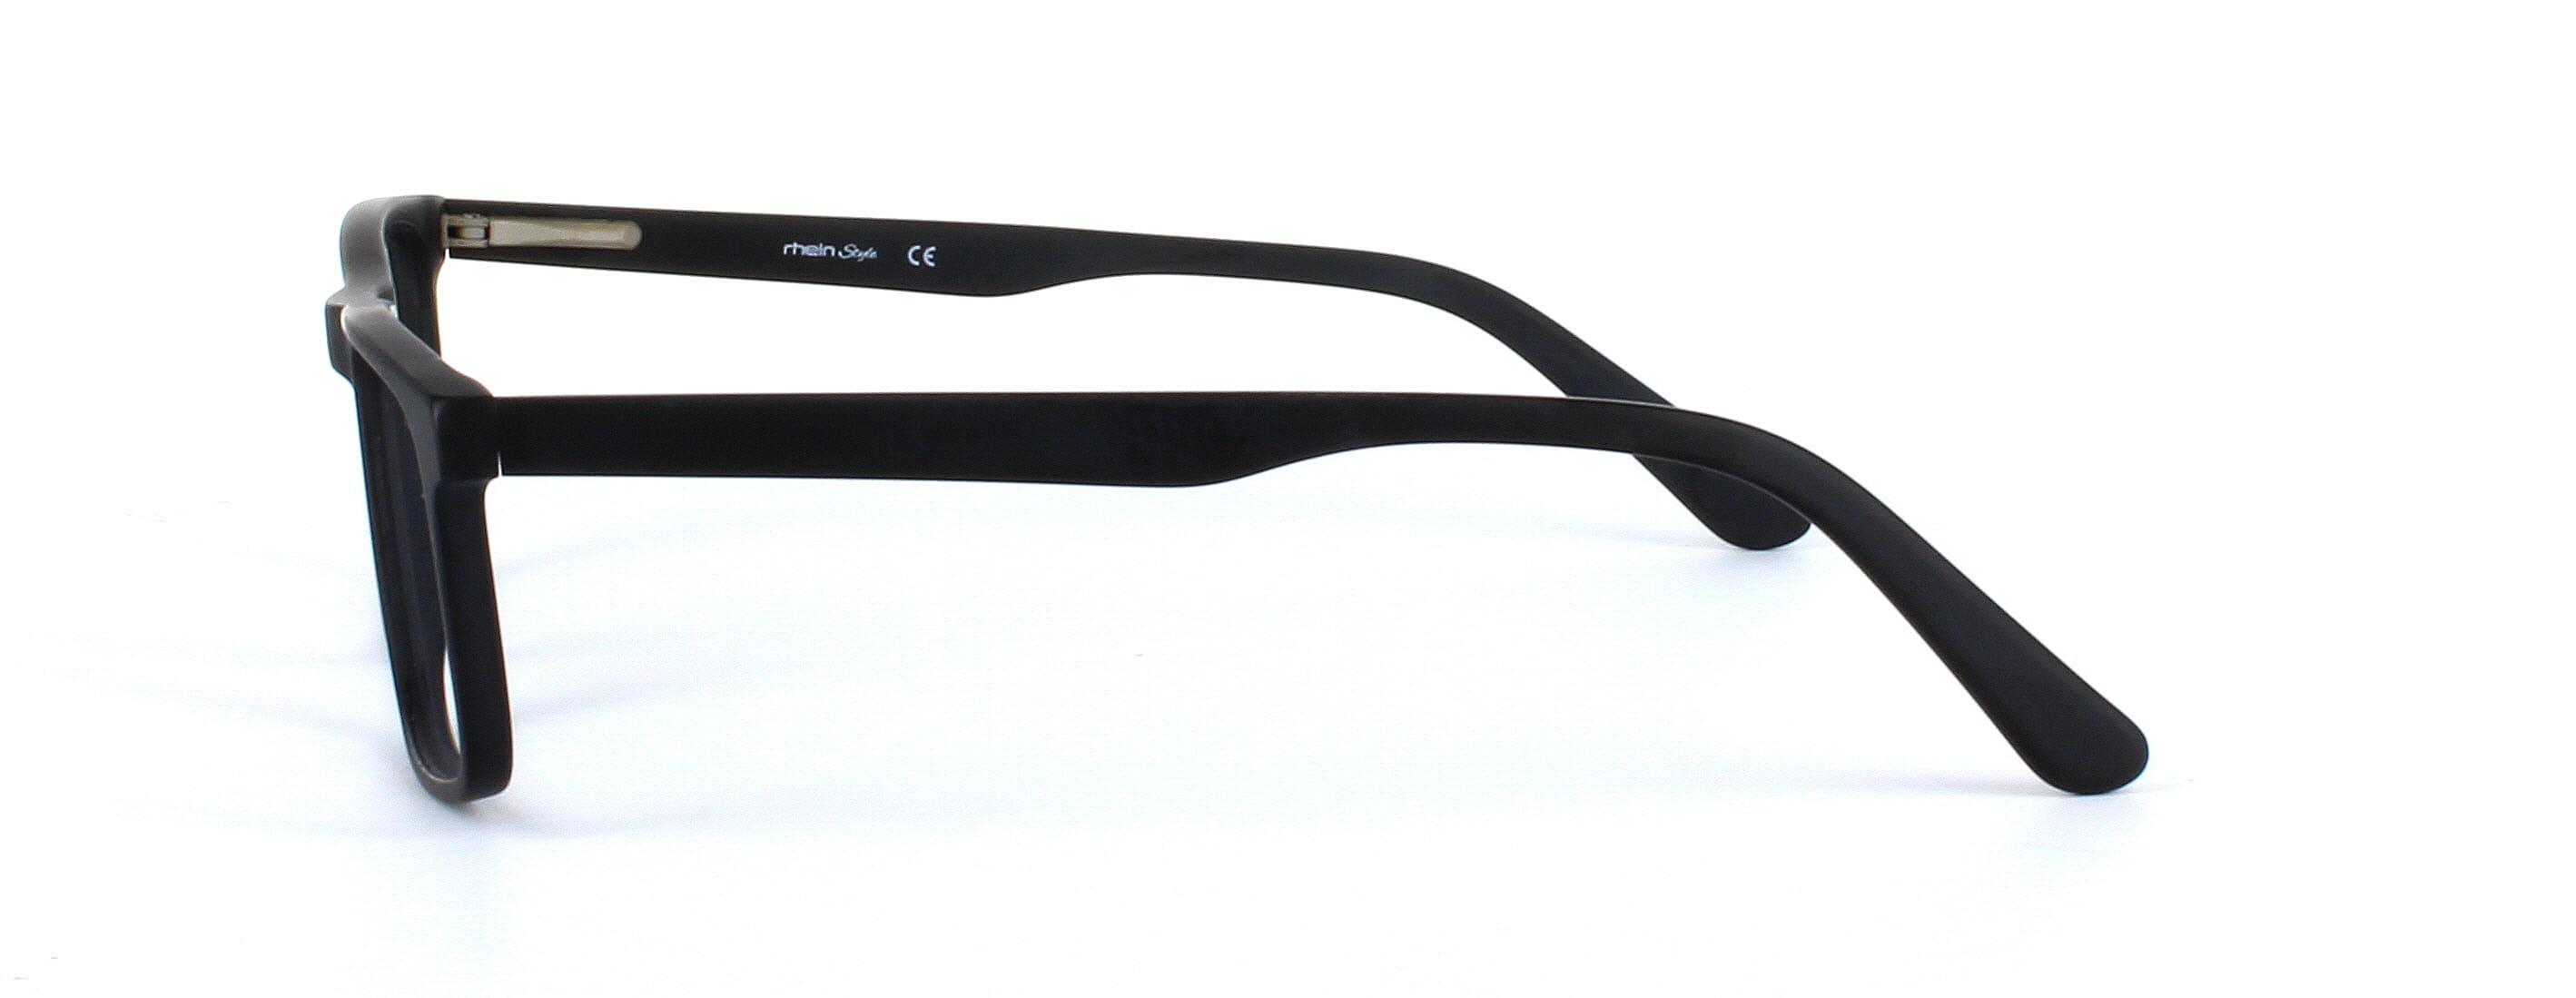 Livadia - unisex acetate glasses in matt black - image view 2